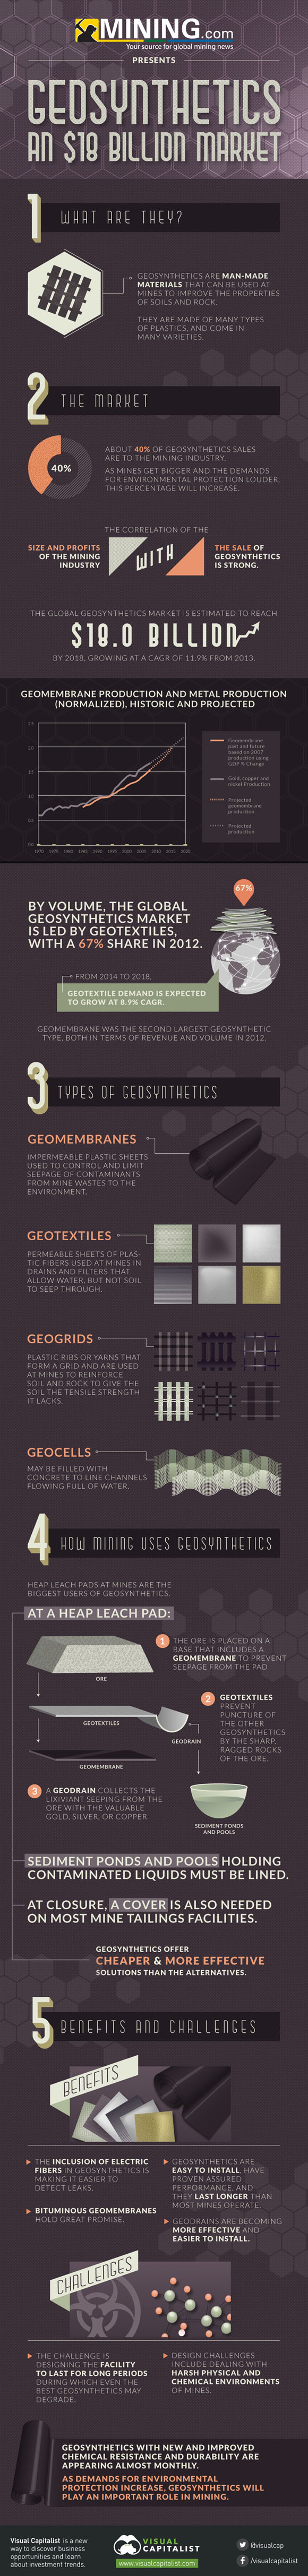 Geosynthetics